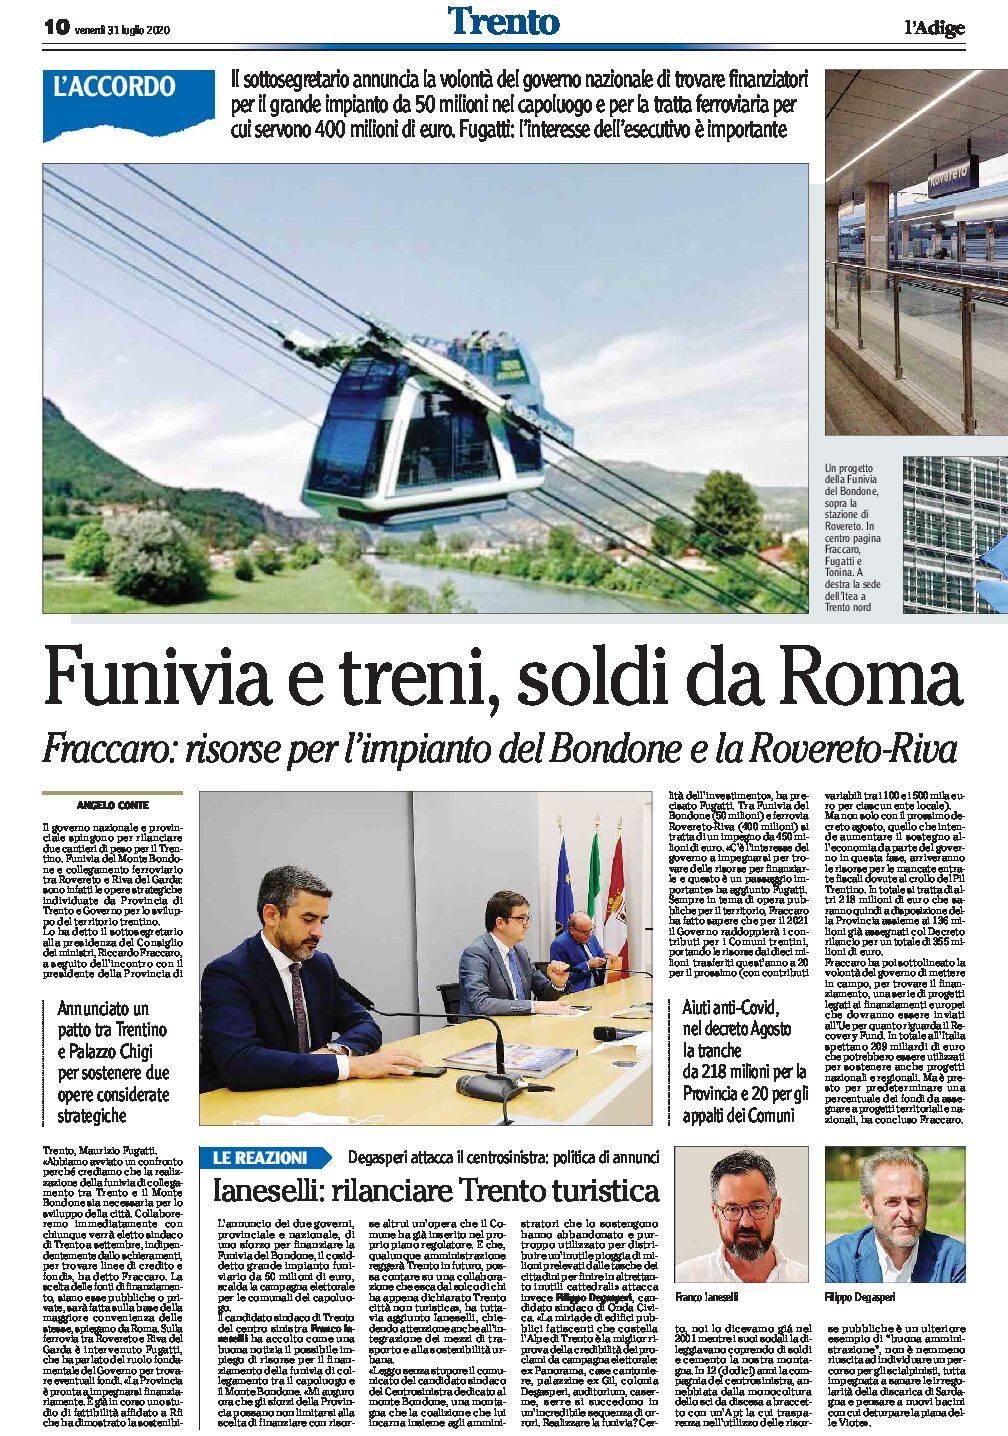 Fraccaro, soldi da Roma: per la funivia del Bondone e i treni Rovereto-Riva